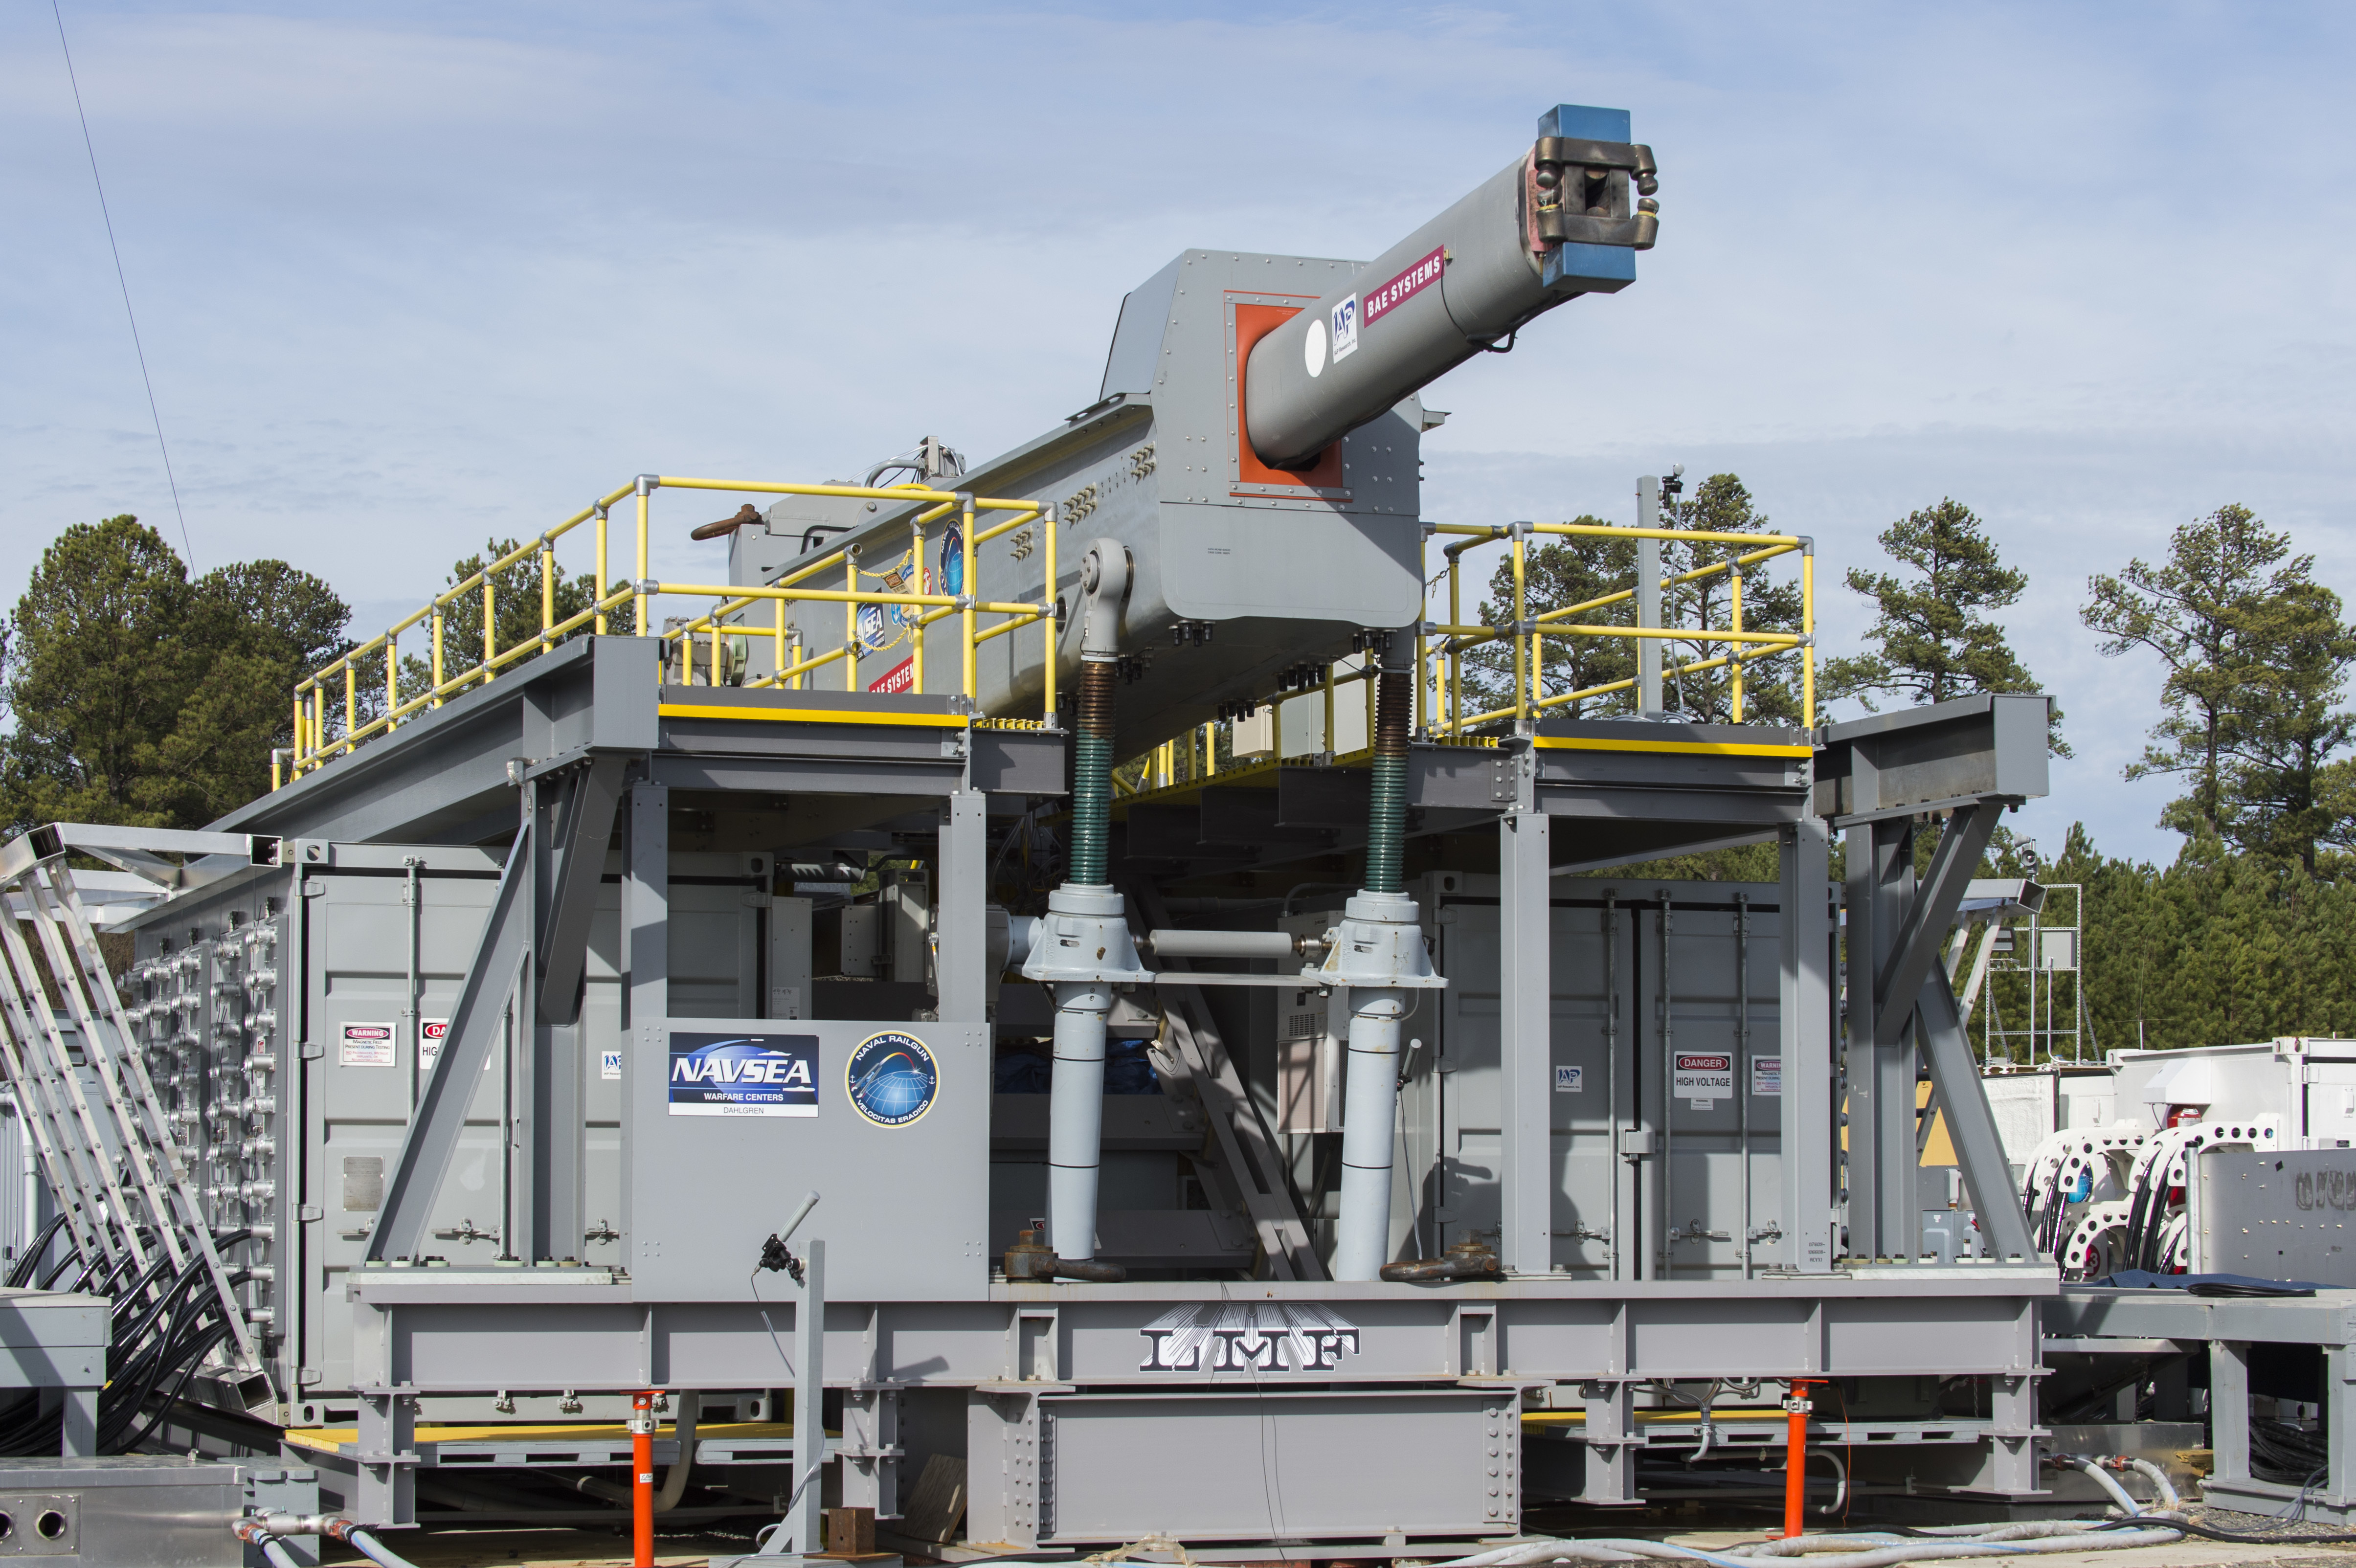 Один из прототипов (BAE Systems) электромагнитной пушки EMRG (Electromagnetic Railgun) на базе подразделения Dahlgren центра надводного вооружения управления военно-морских исследований ВМС США, фото сделано 12 января 2017 года 